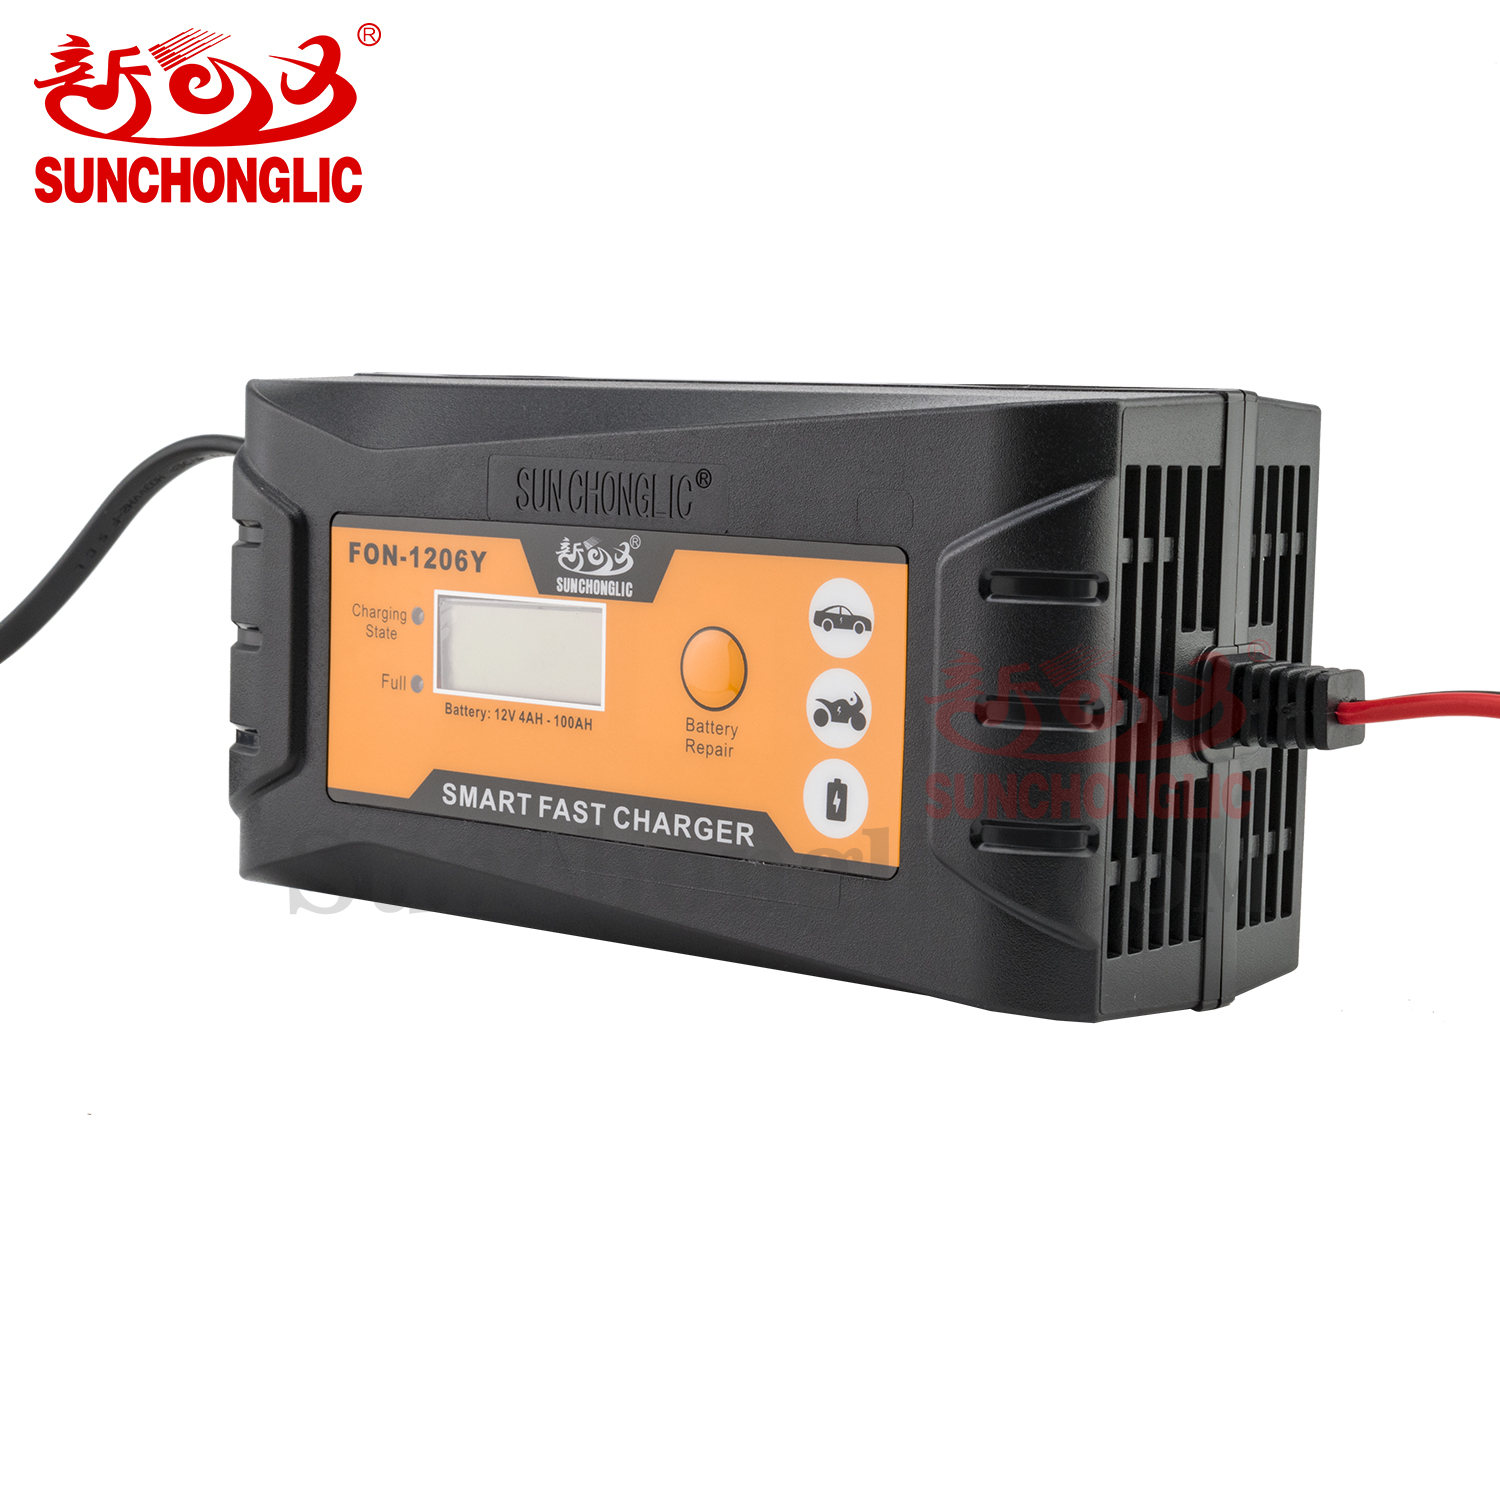 12 volt 6amp 12v 6A lead acid battery charger